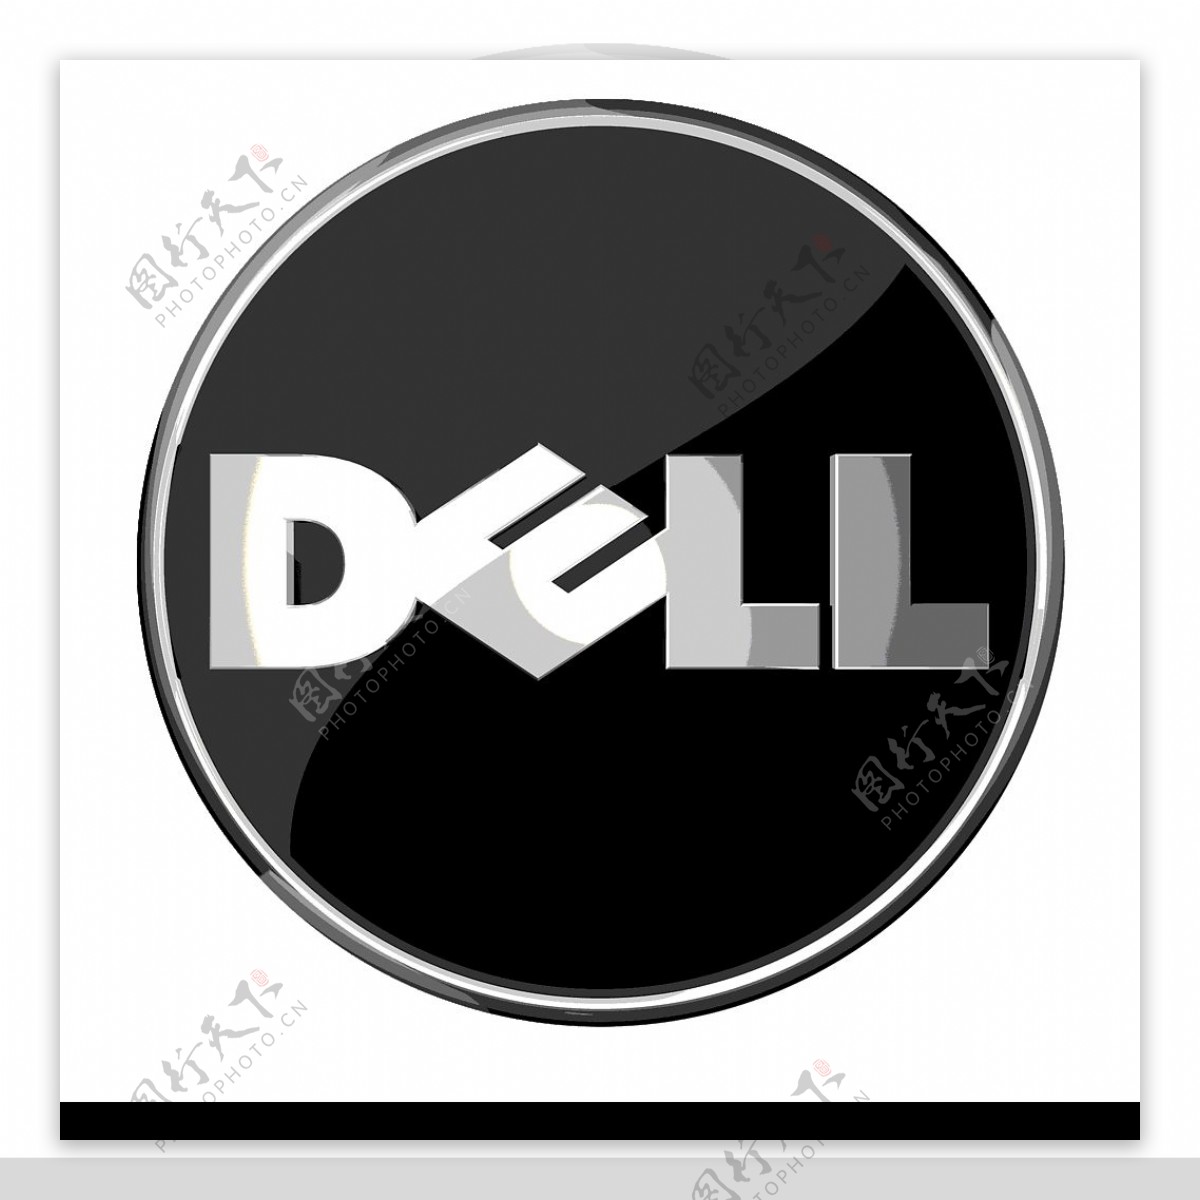 Dell标志图片